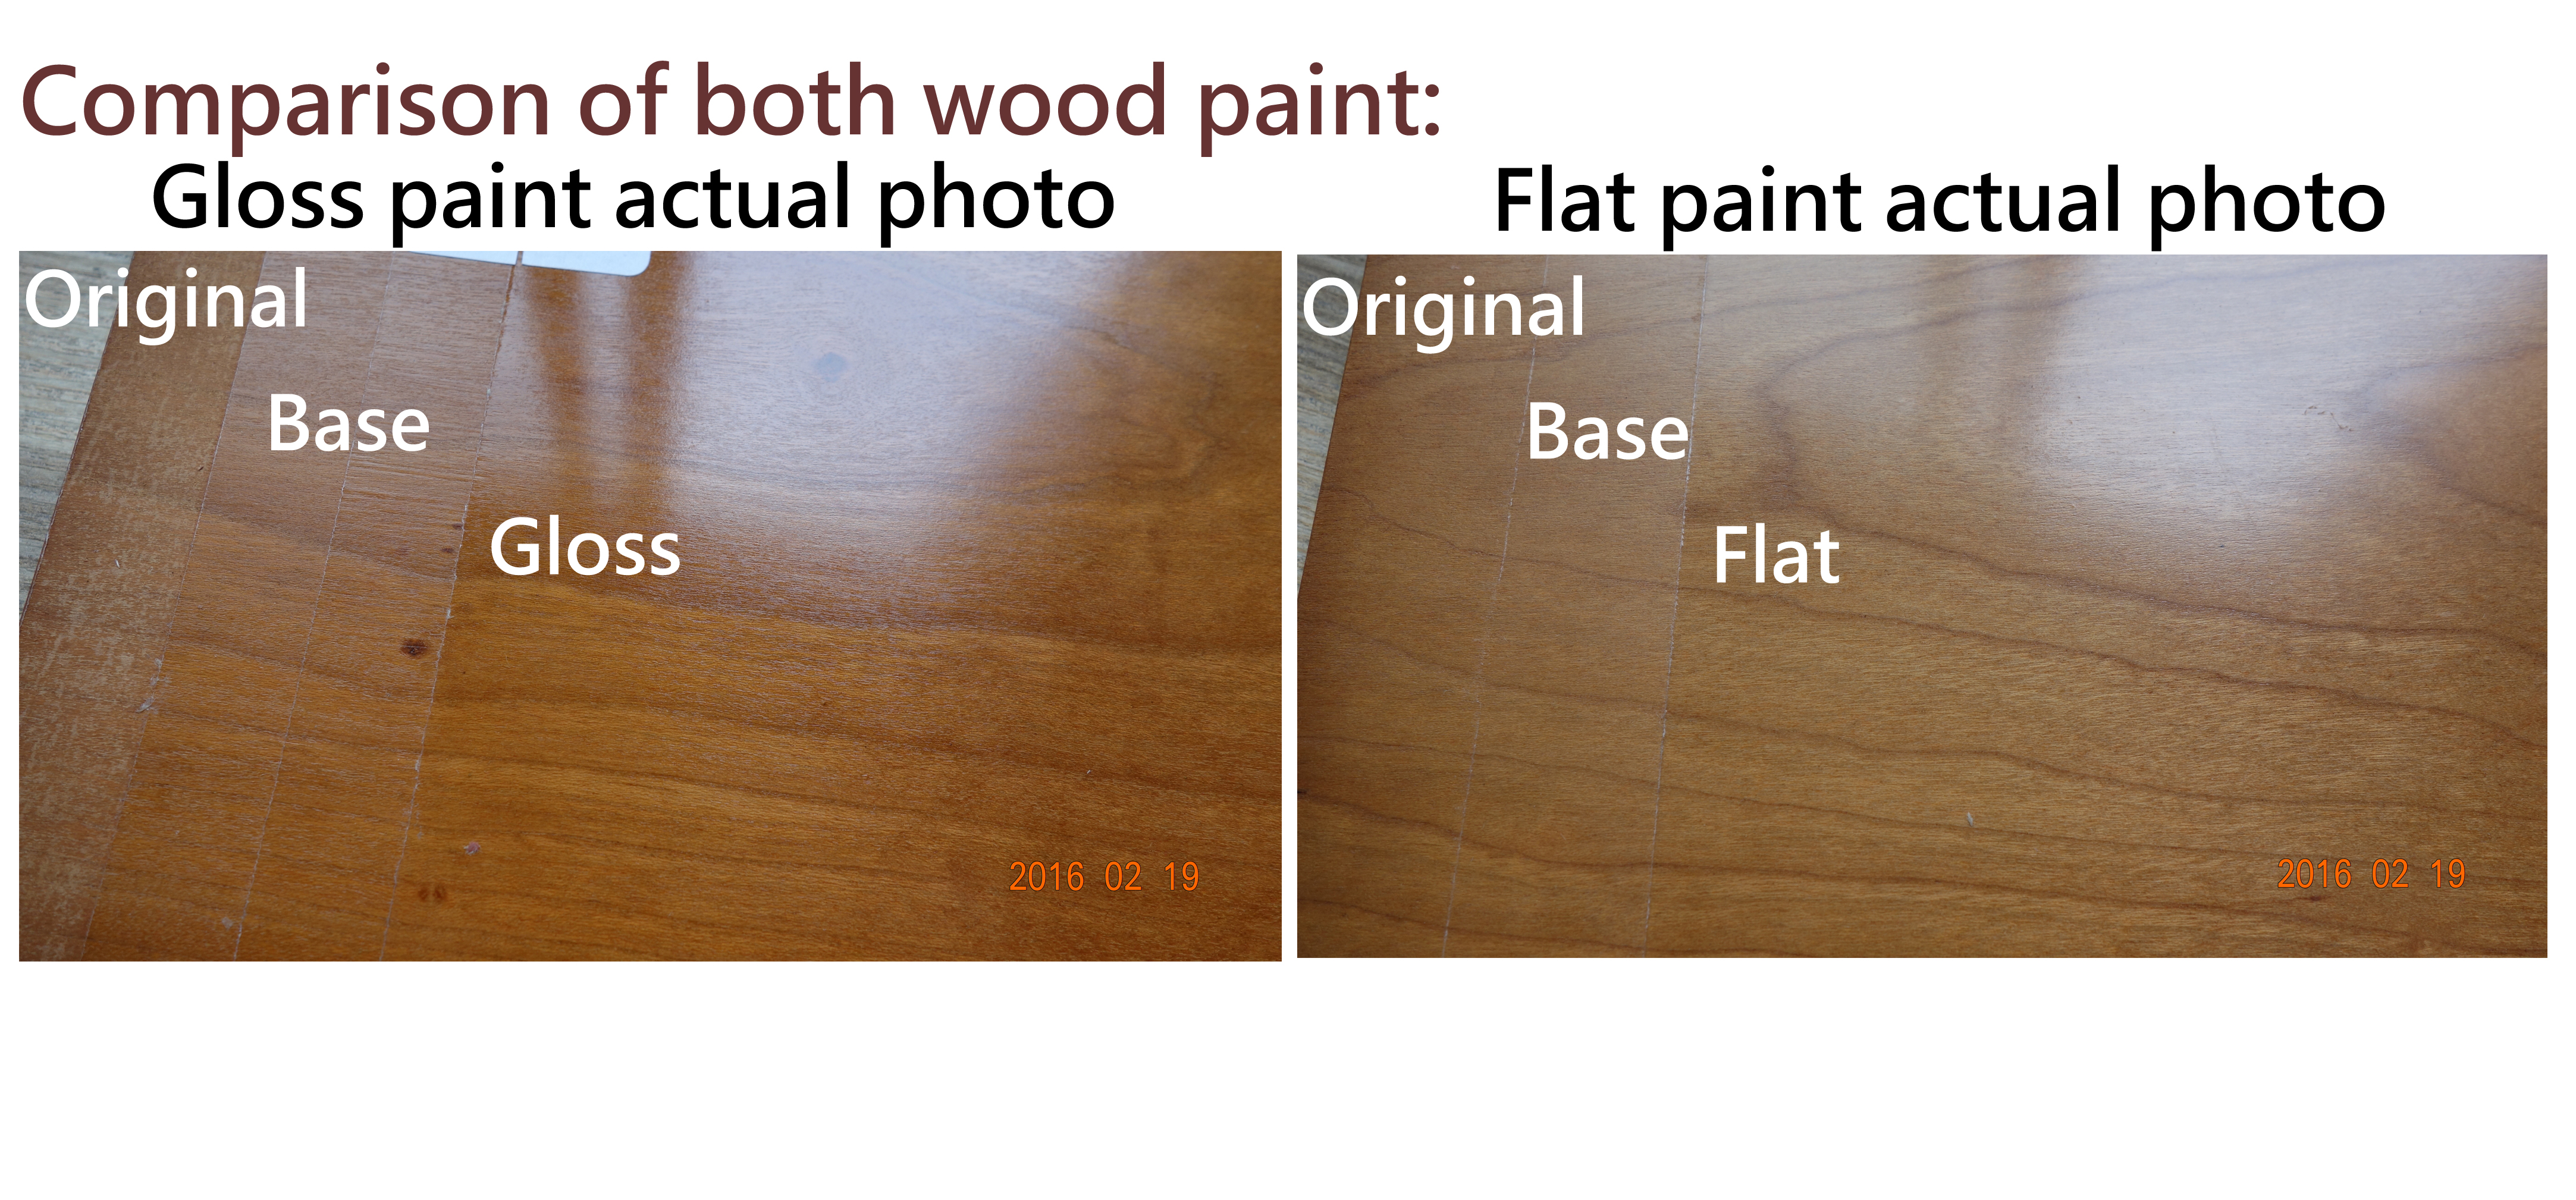 Wood paint sample